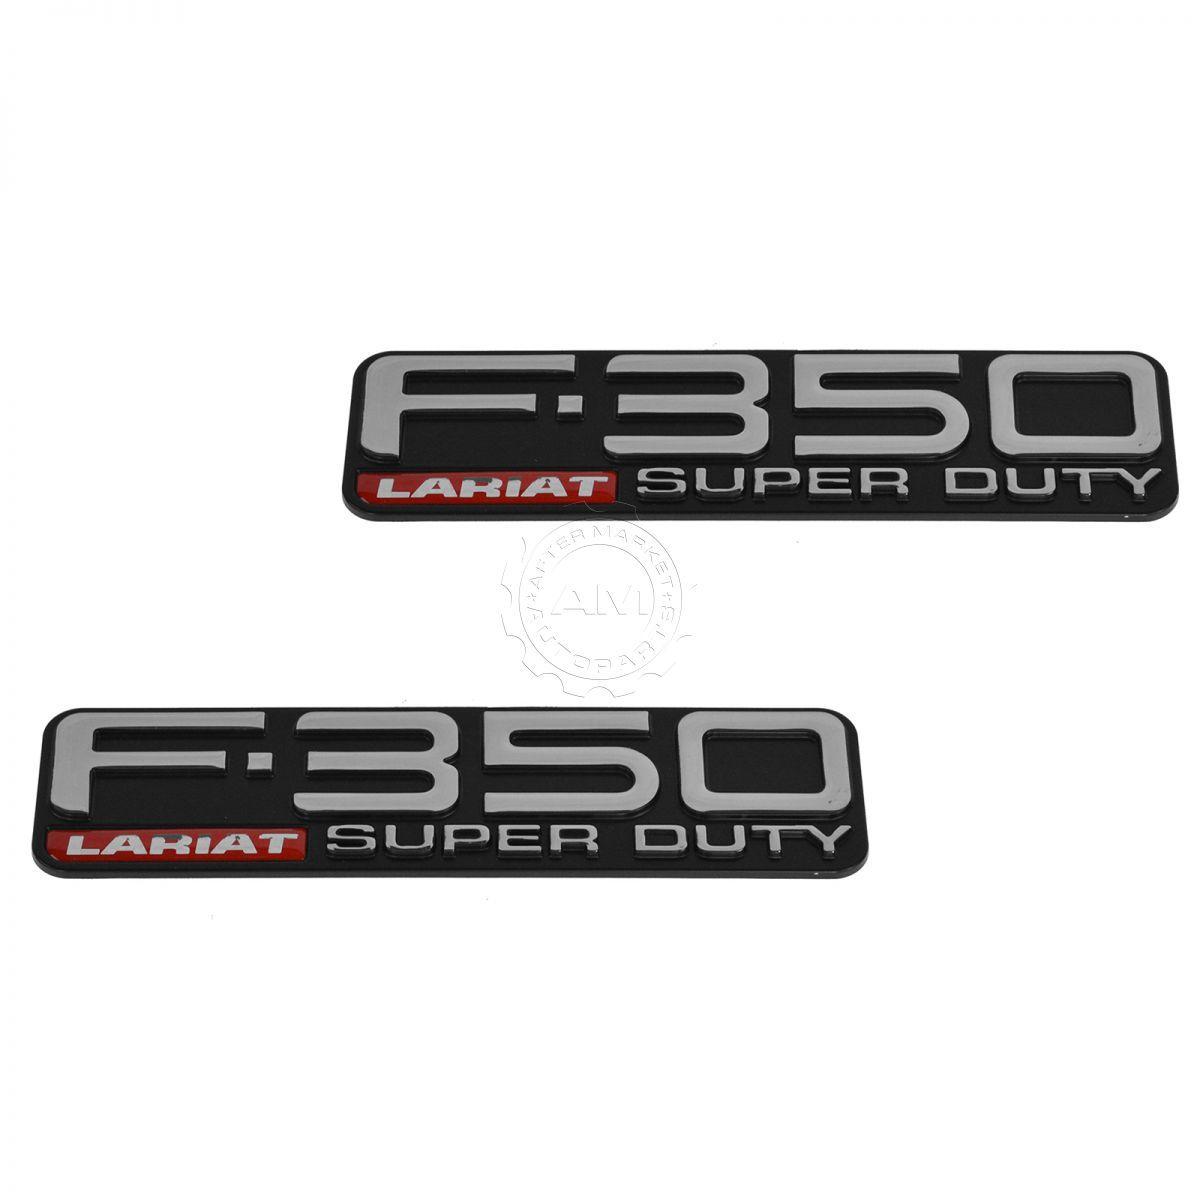 F-350 Logo - Details about OEM F-350 Lariat Super Duty Fender Nameplate Emblem Pair Set  for Ford Pickup New